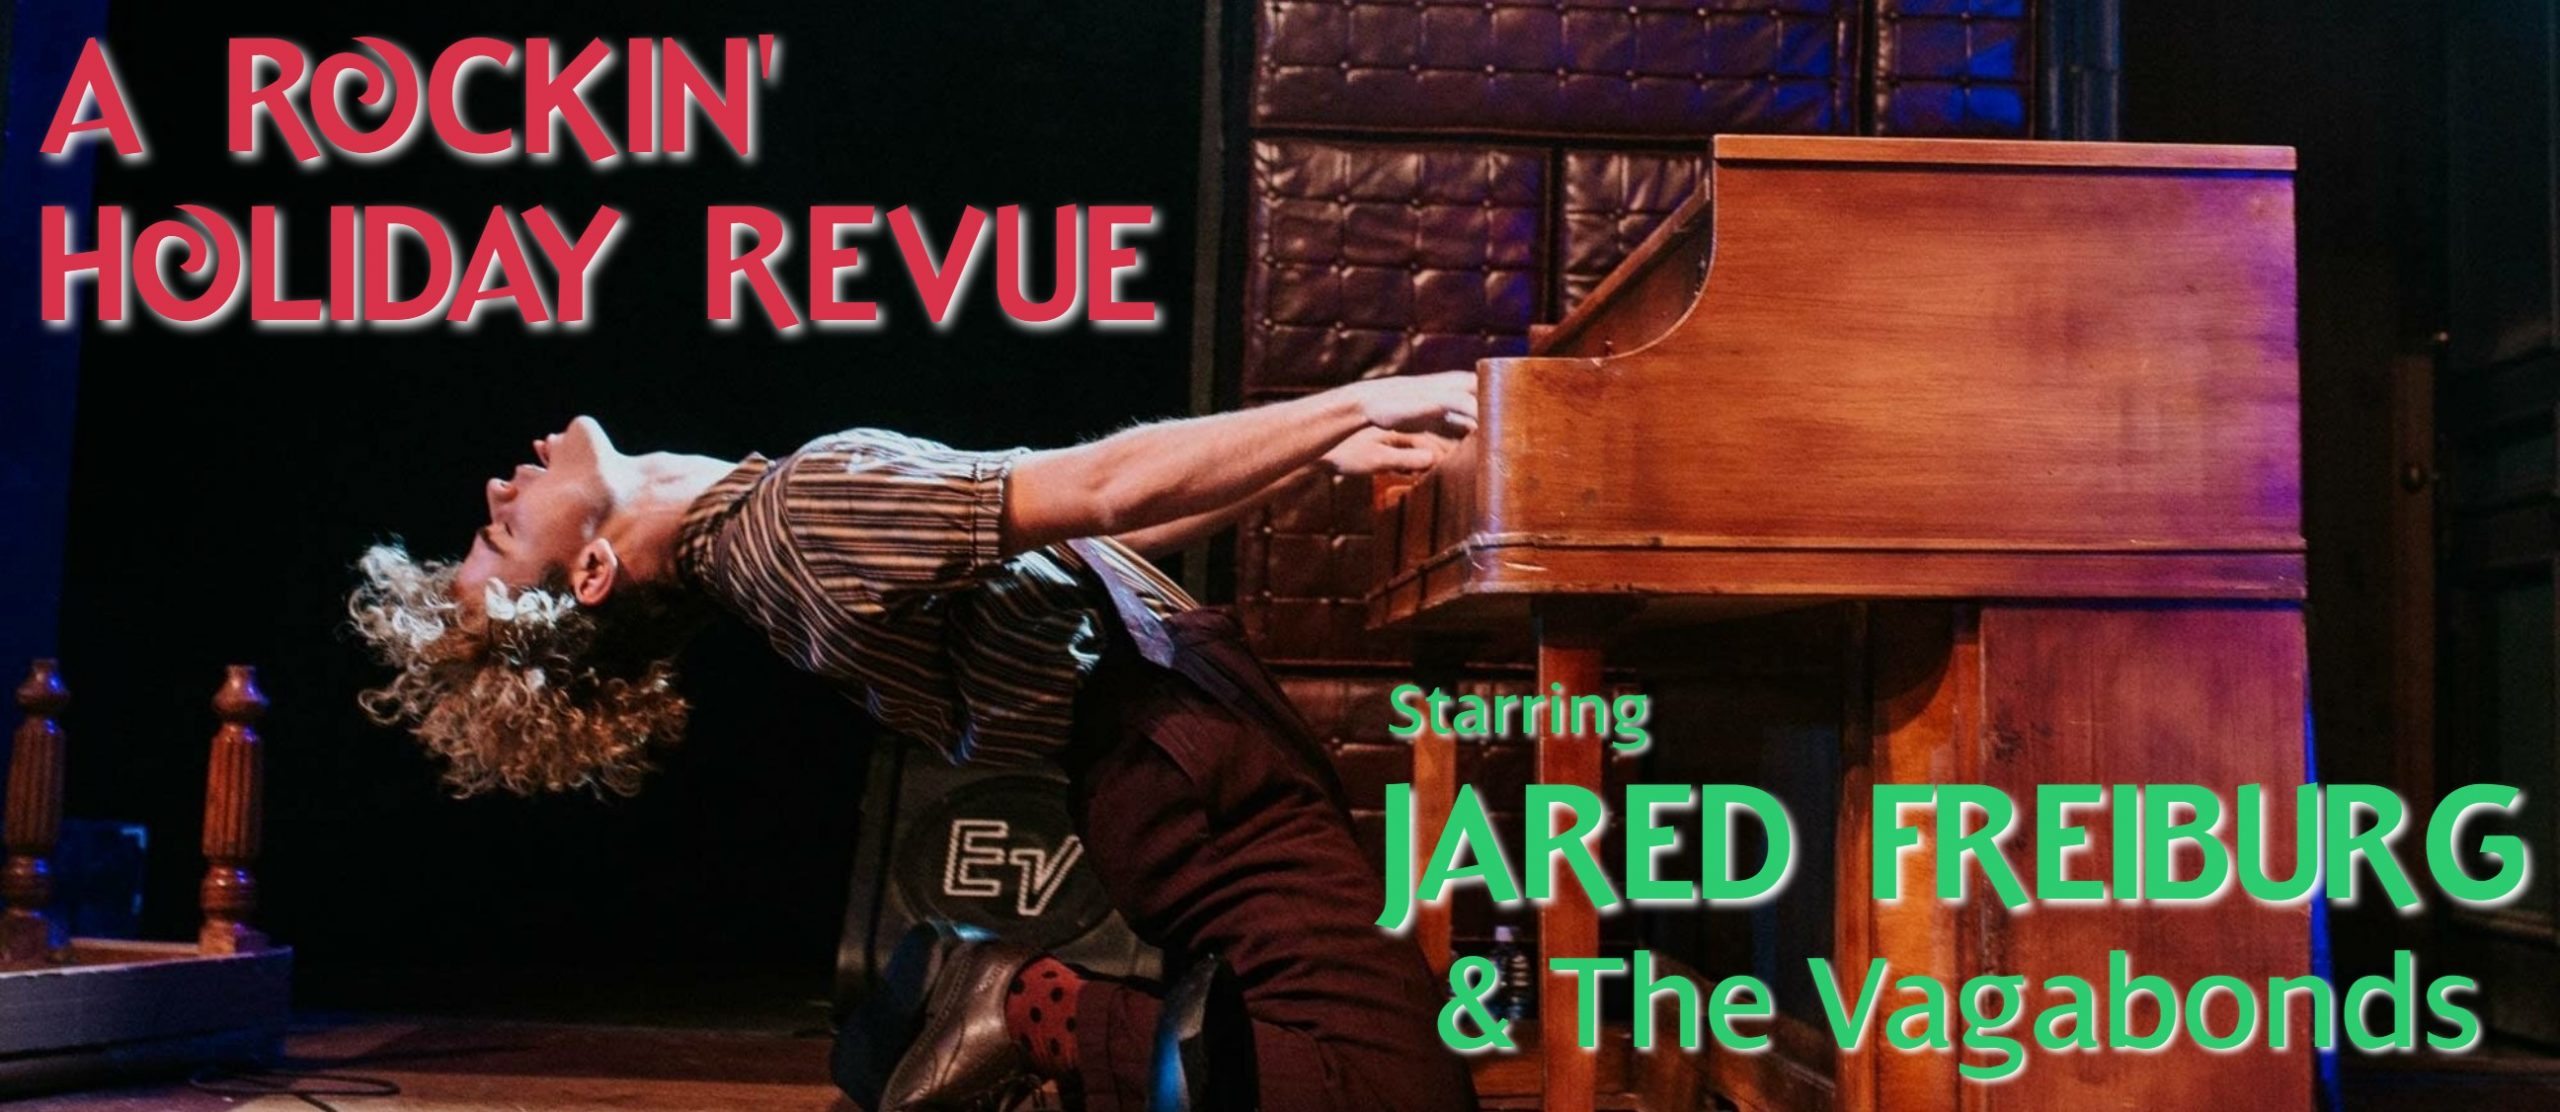 Jared Freiburg & The Vagabonds "Rockin' Holiday Revue"